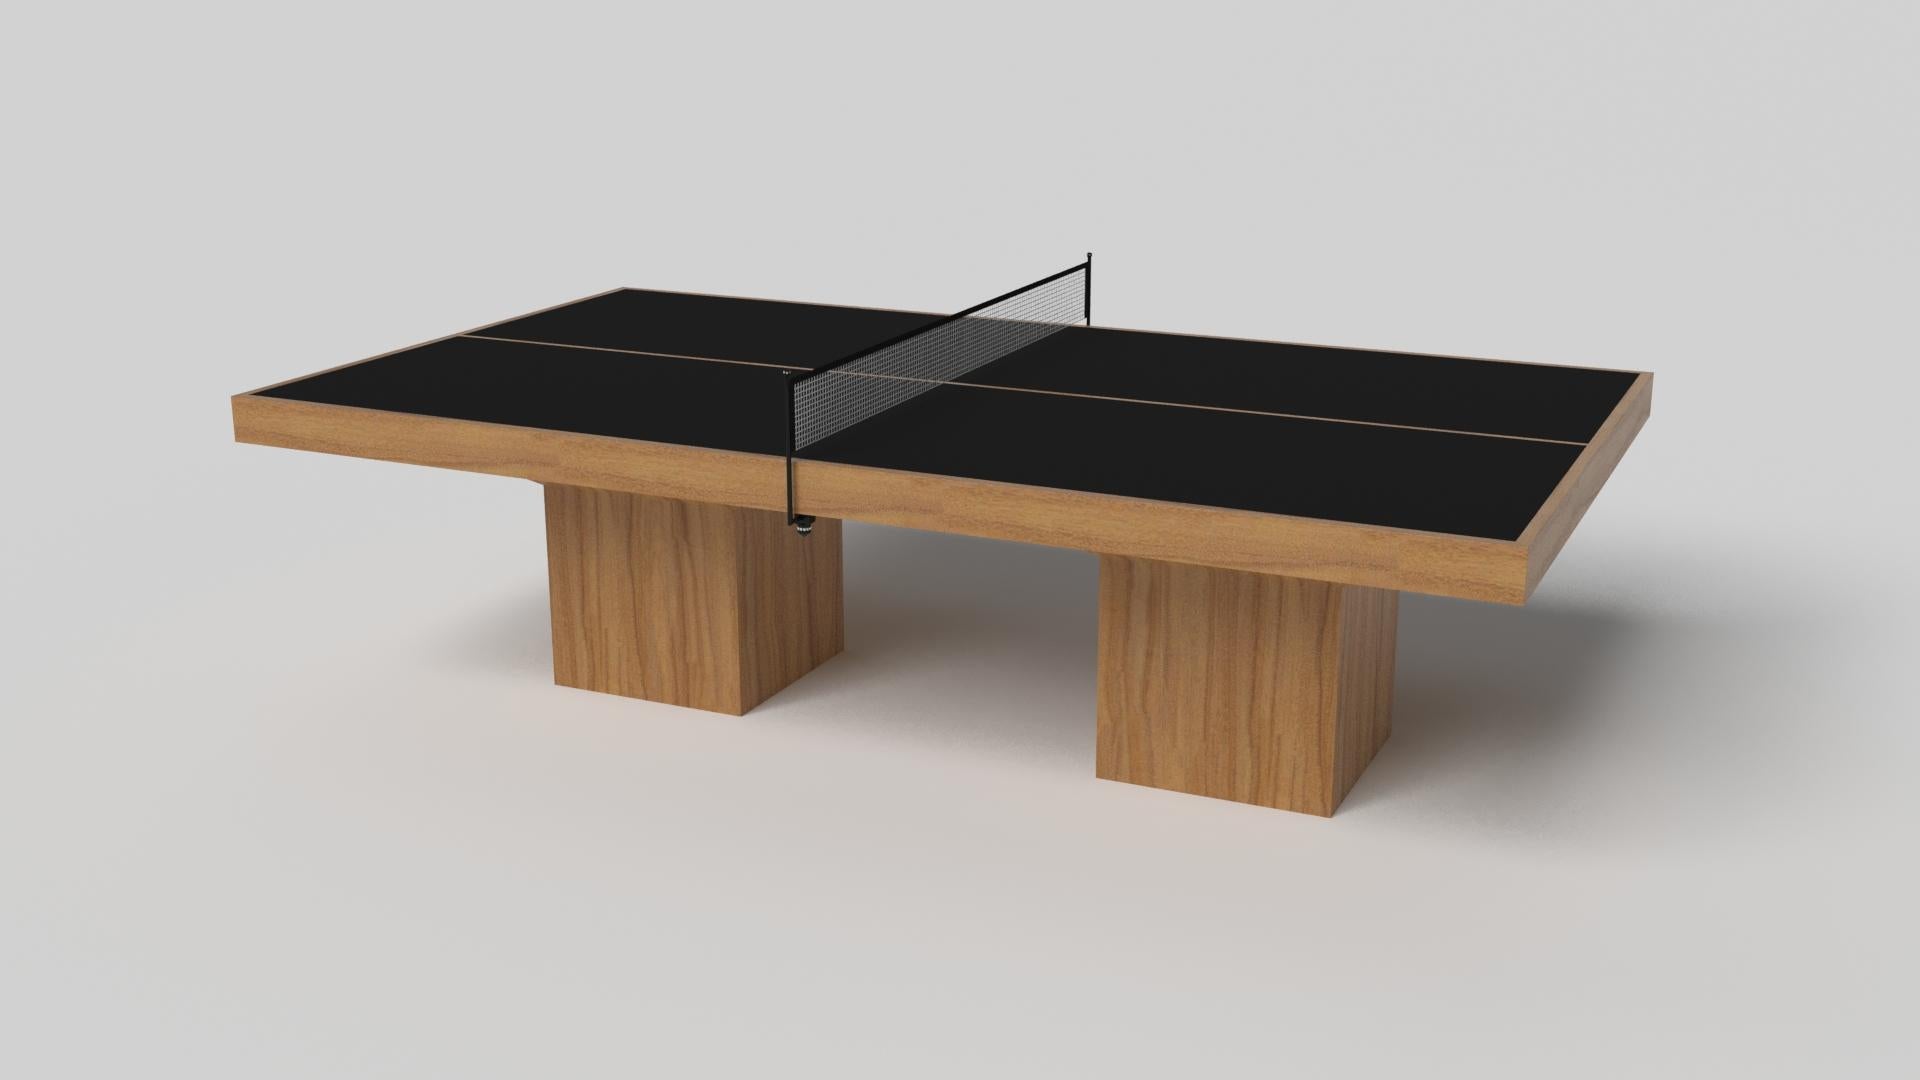 Le design minimaliste rencontre l'élégance opulente dans la table de tennis de table Trestle. Détaillée avec une surface professionnelle pour des jeux sans fin, cette table contemporaine est fabriquée de manière experte. Les pieds carrés lui